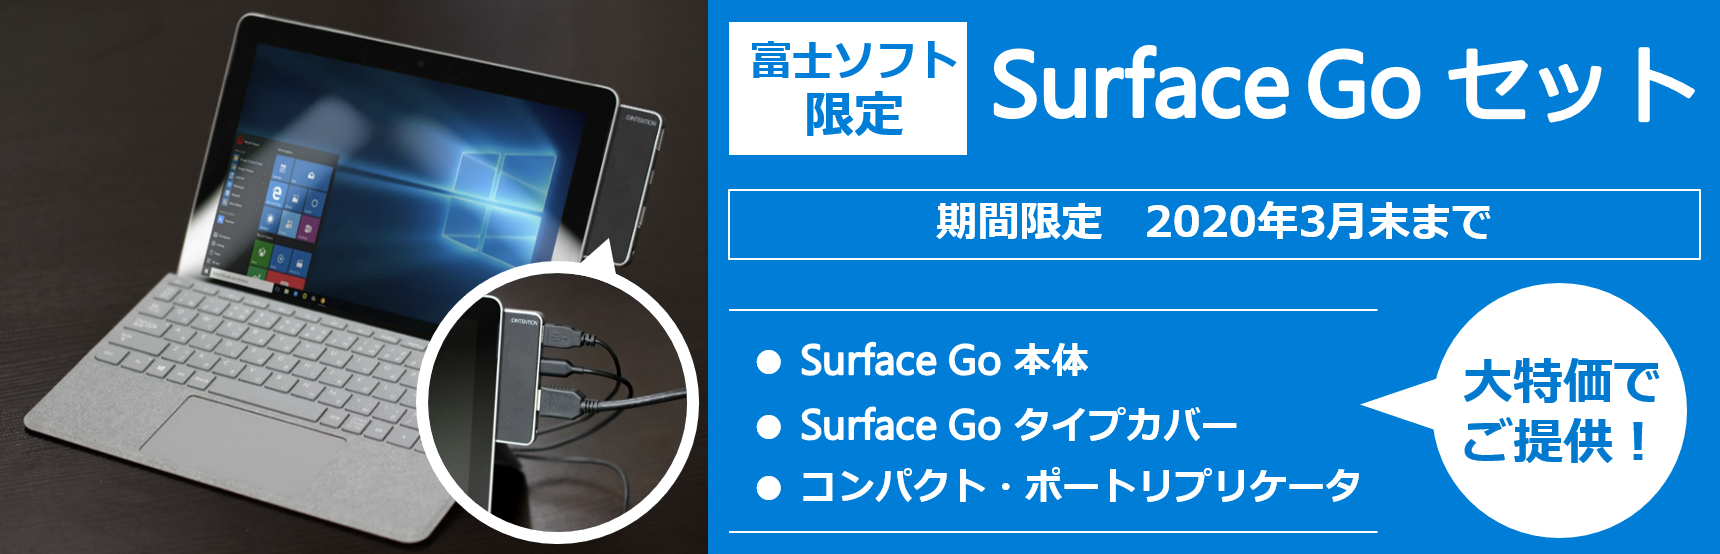 Surface Go 特別キャンペーン